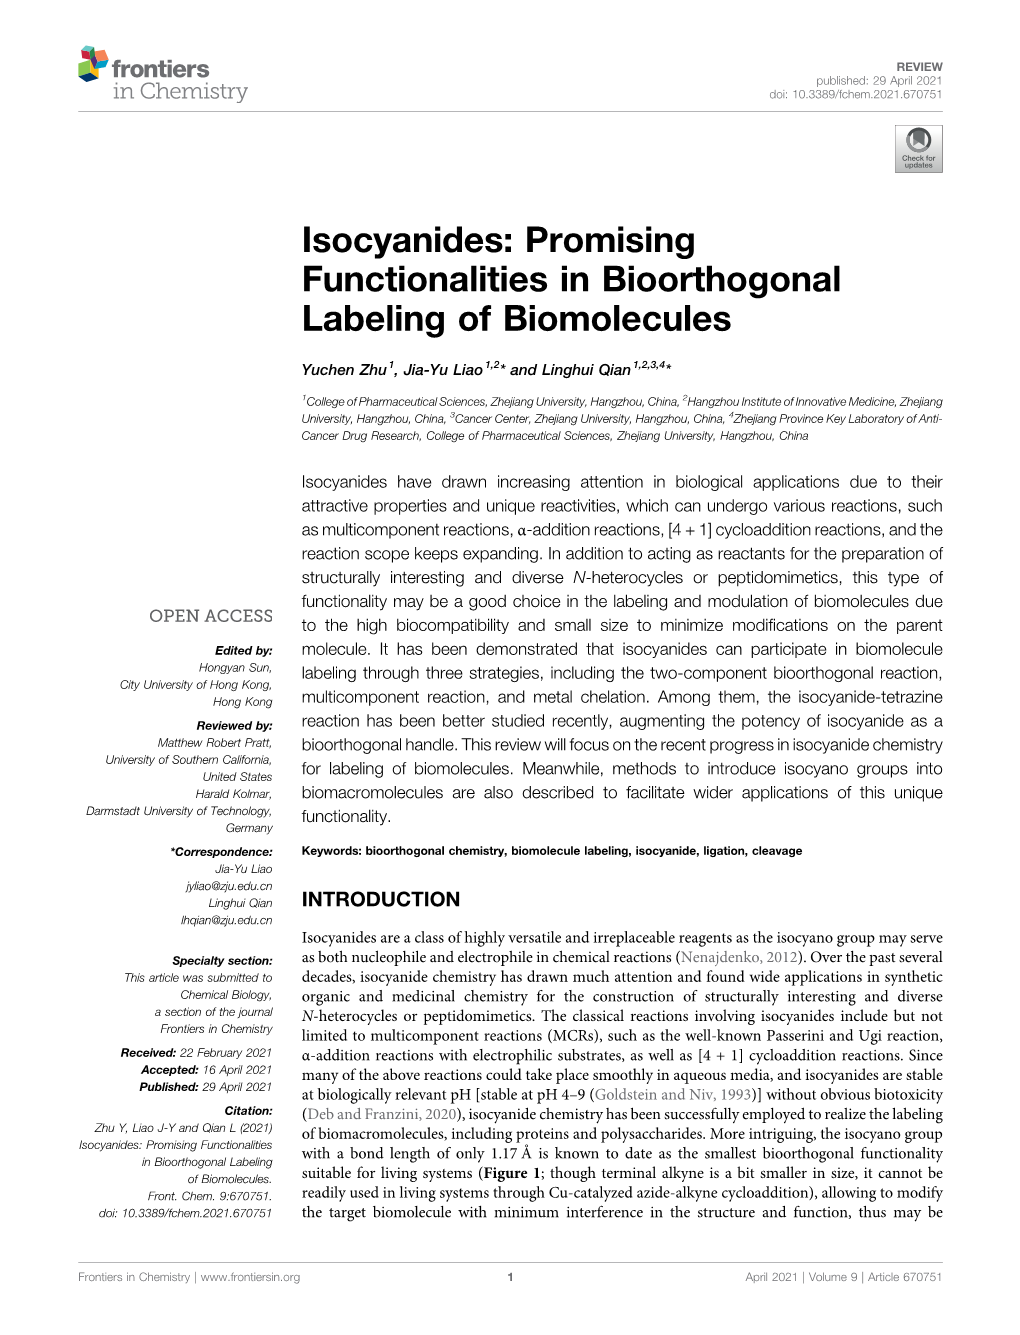 Isocyanides: Promising Functionalities in Bioorthogonal Labeling of Biomolecules